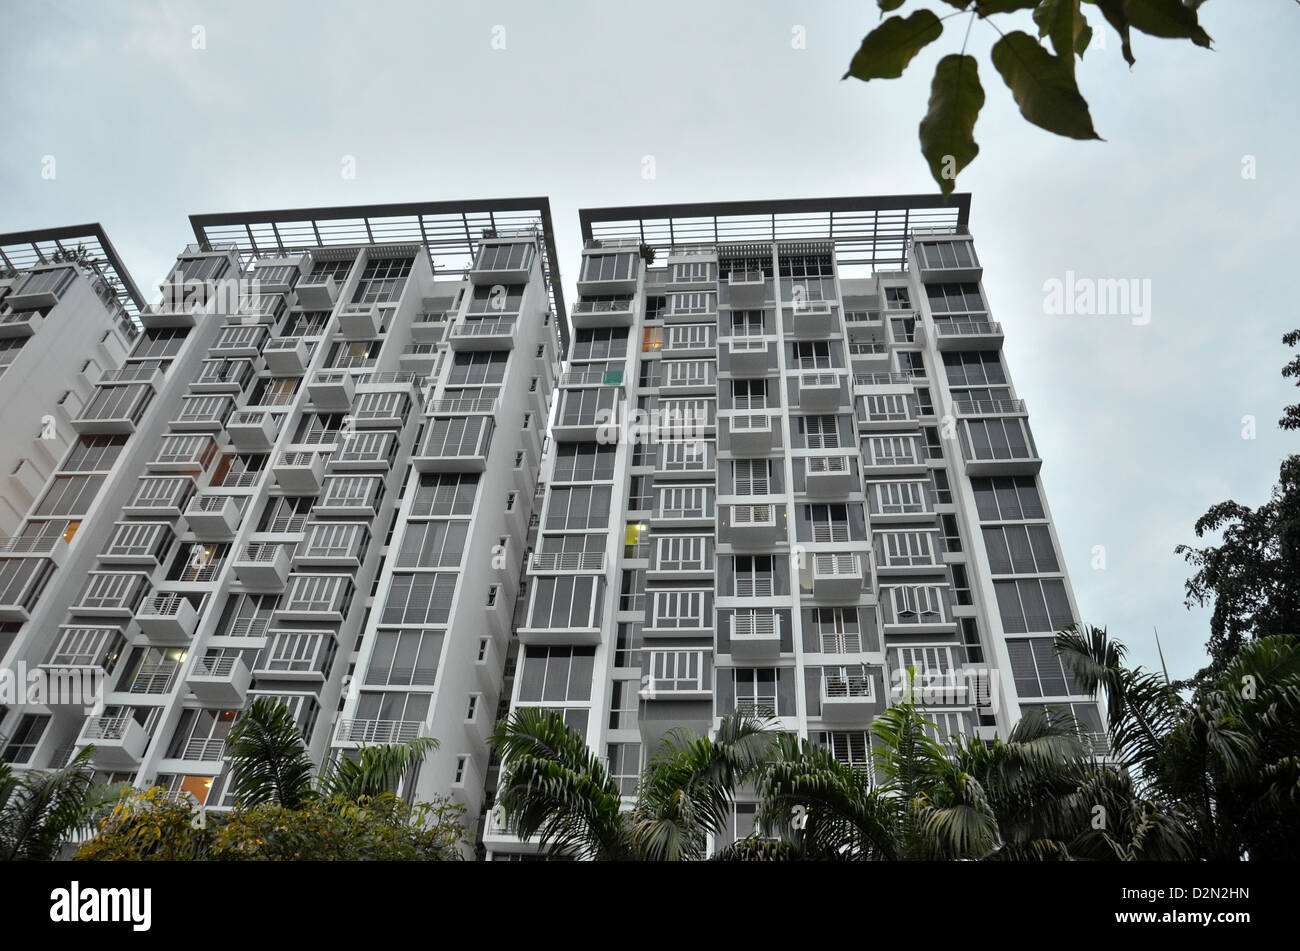 Un appartement / maison d'habitation à Singapour. Remarque Les panneaux sur le toit des bâtiments. Banque D'Images